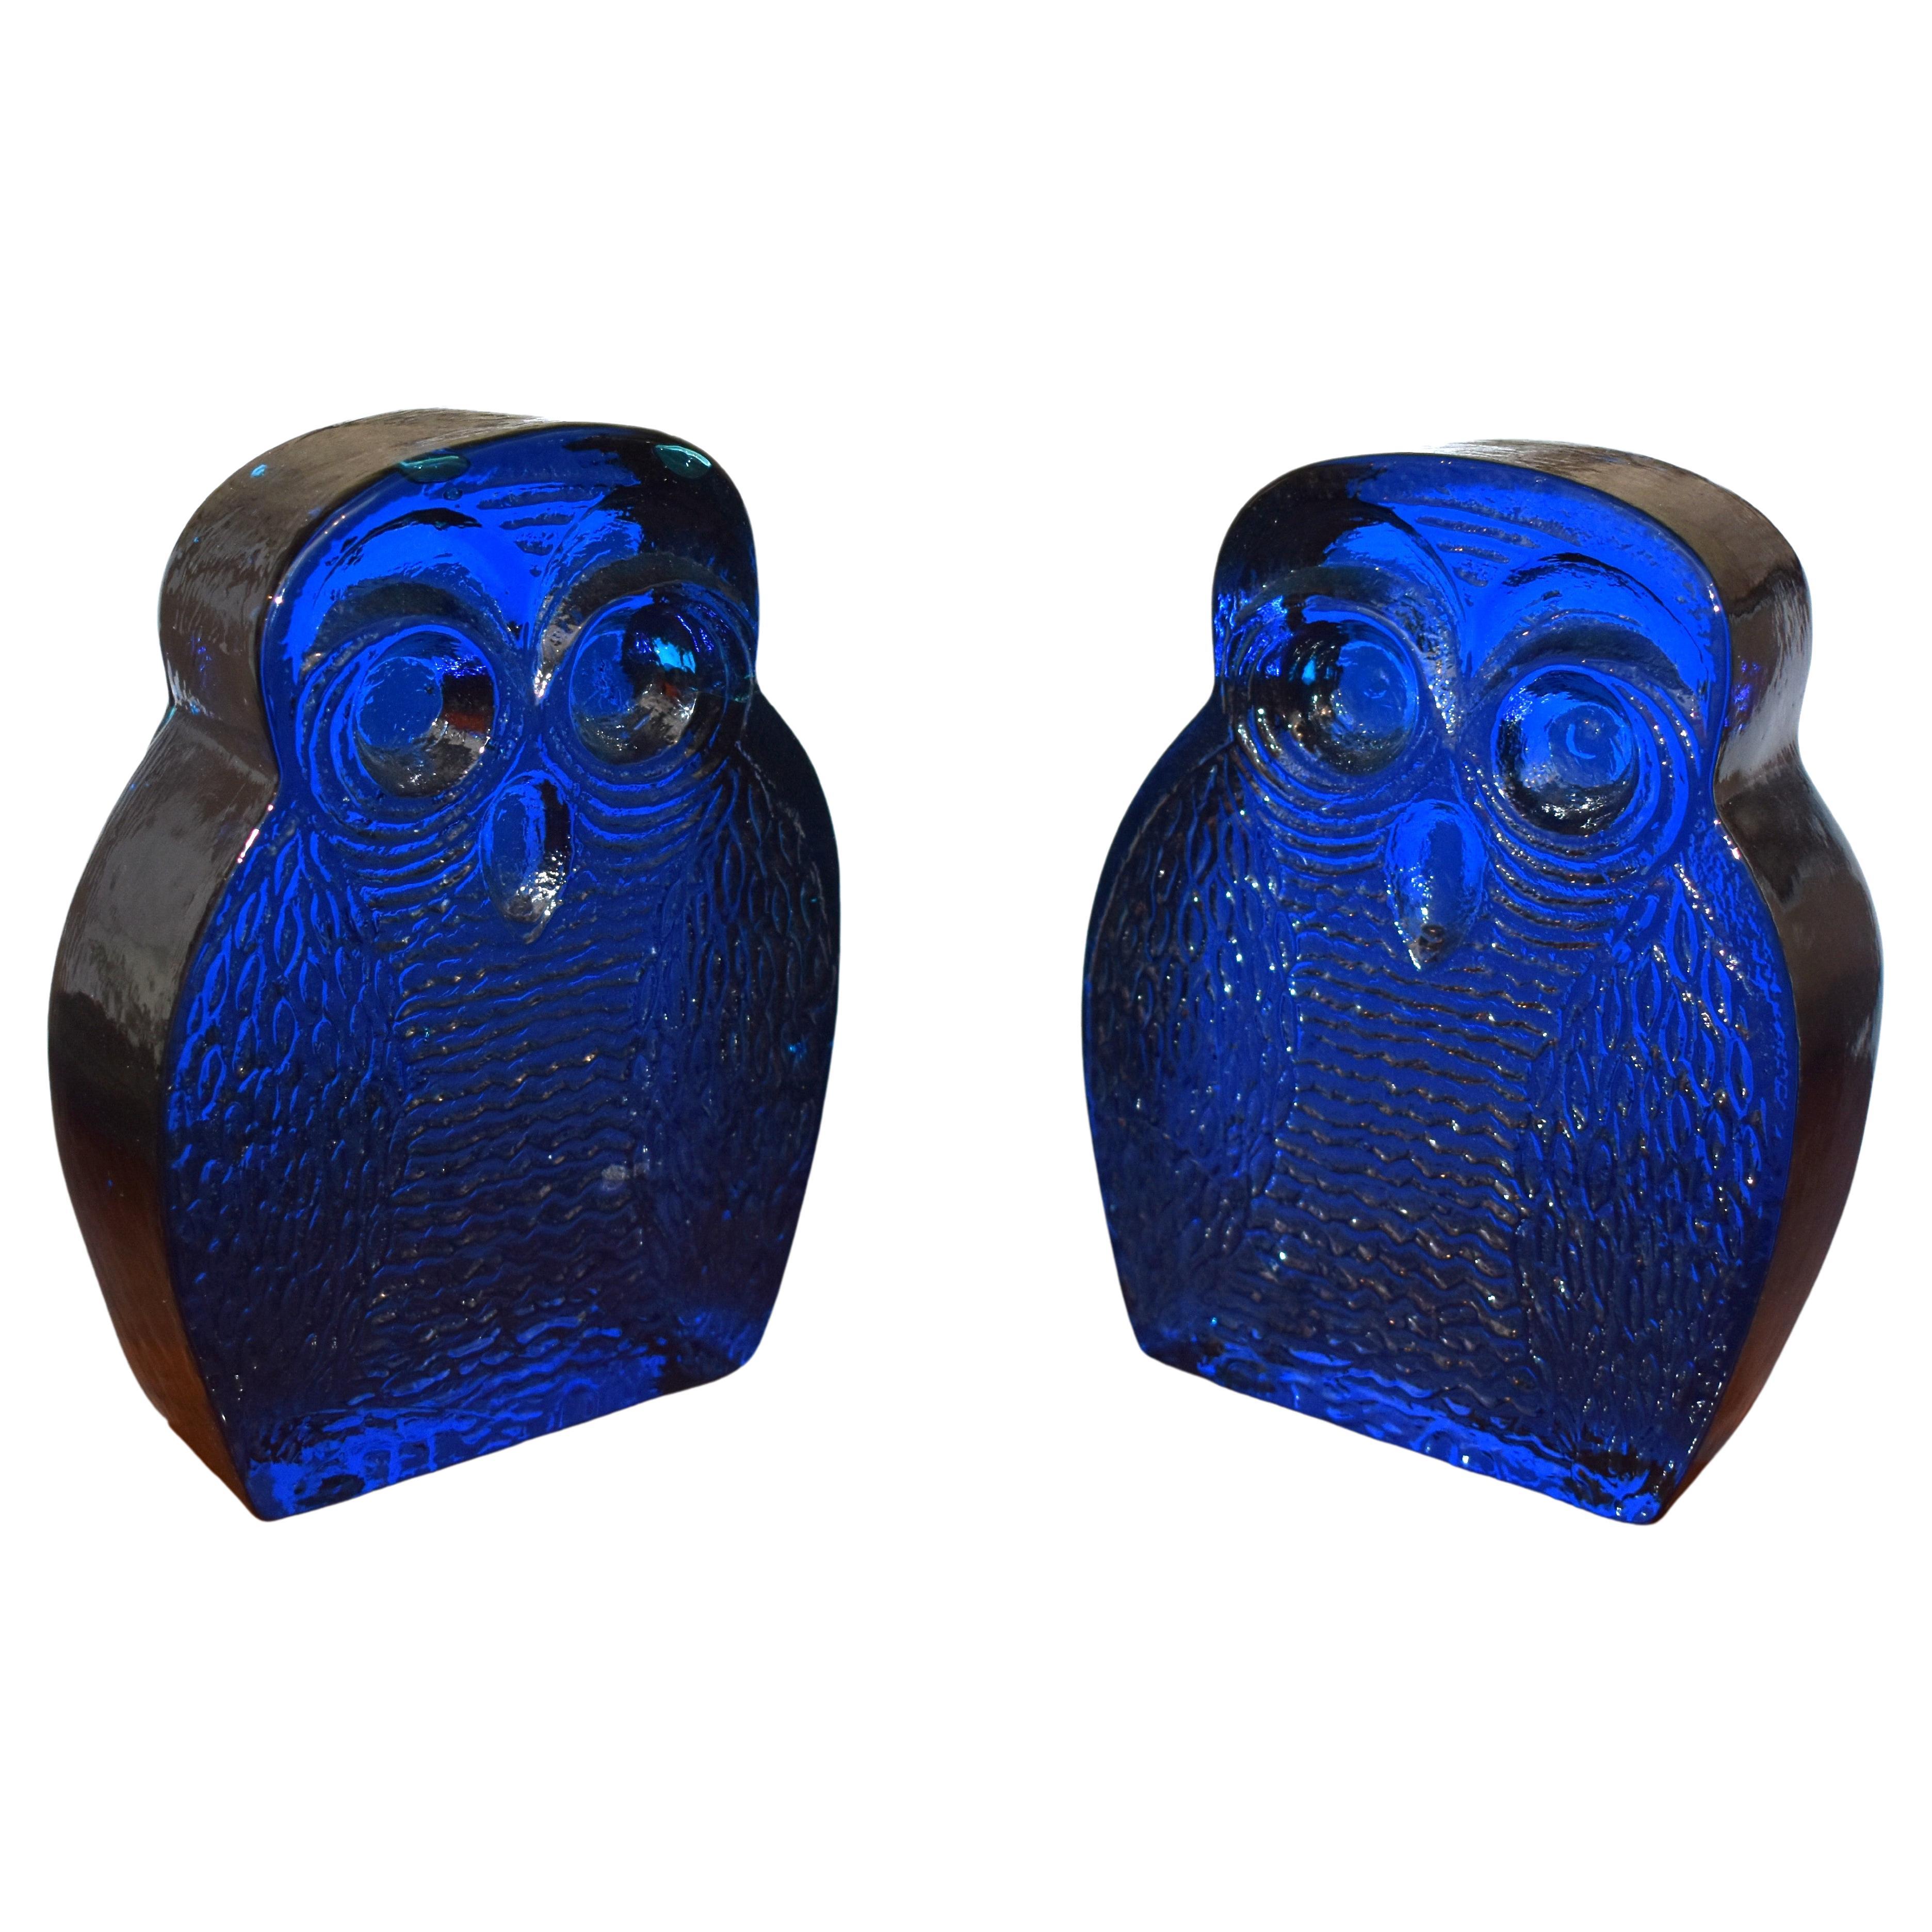 Blenko Blue Glass Owl Bookends by Joel Myers